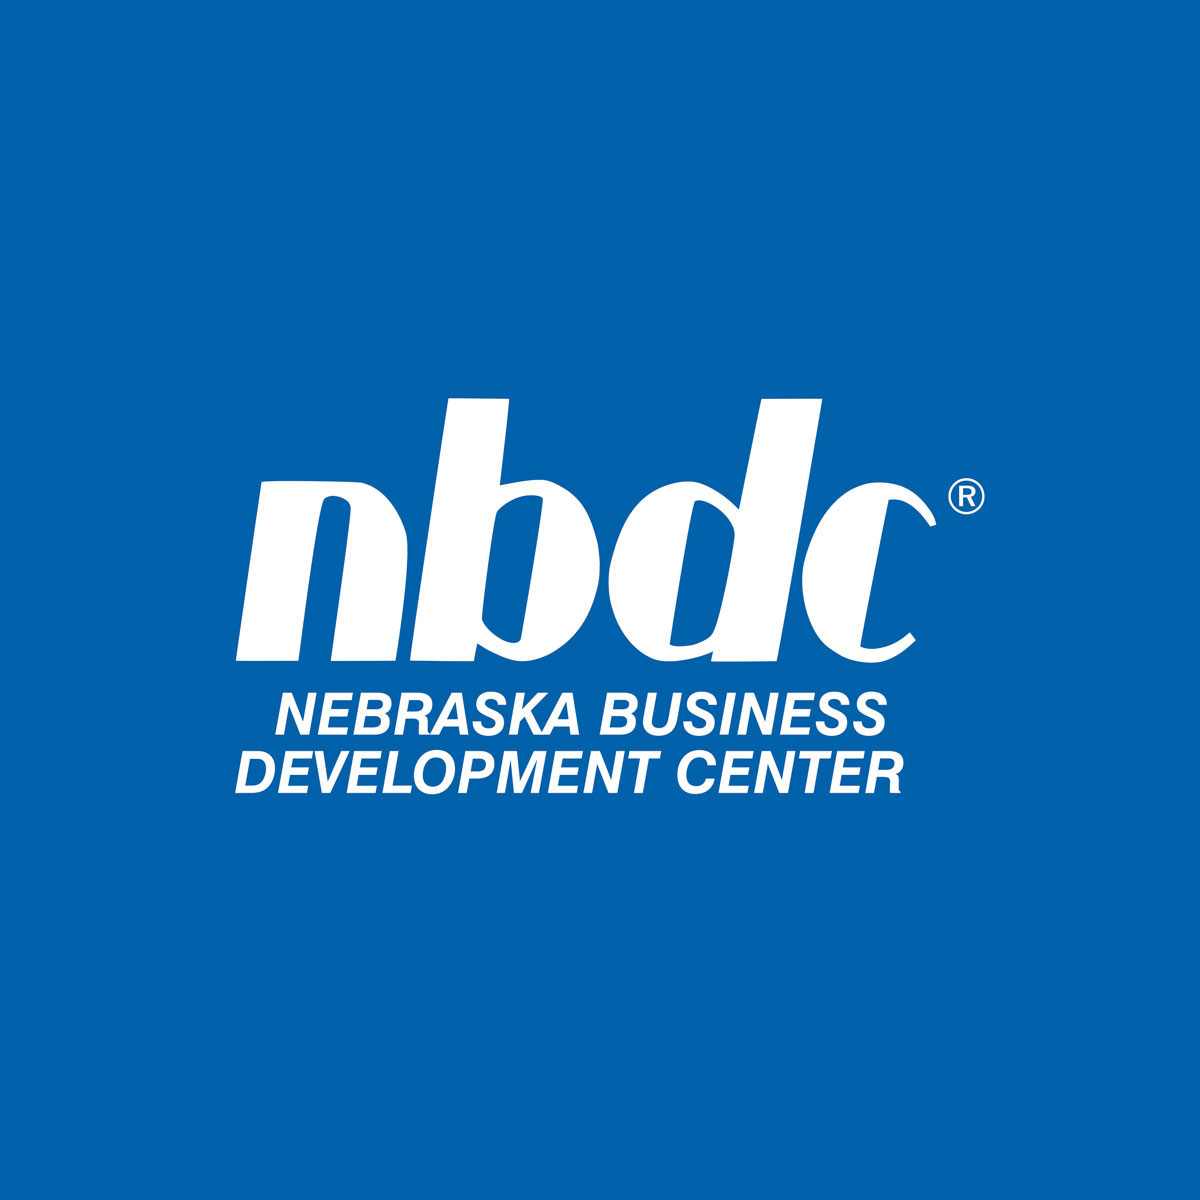 Nebraska Business Development Center logo